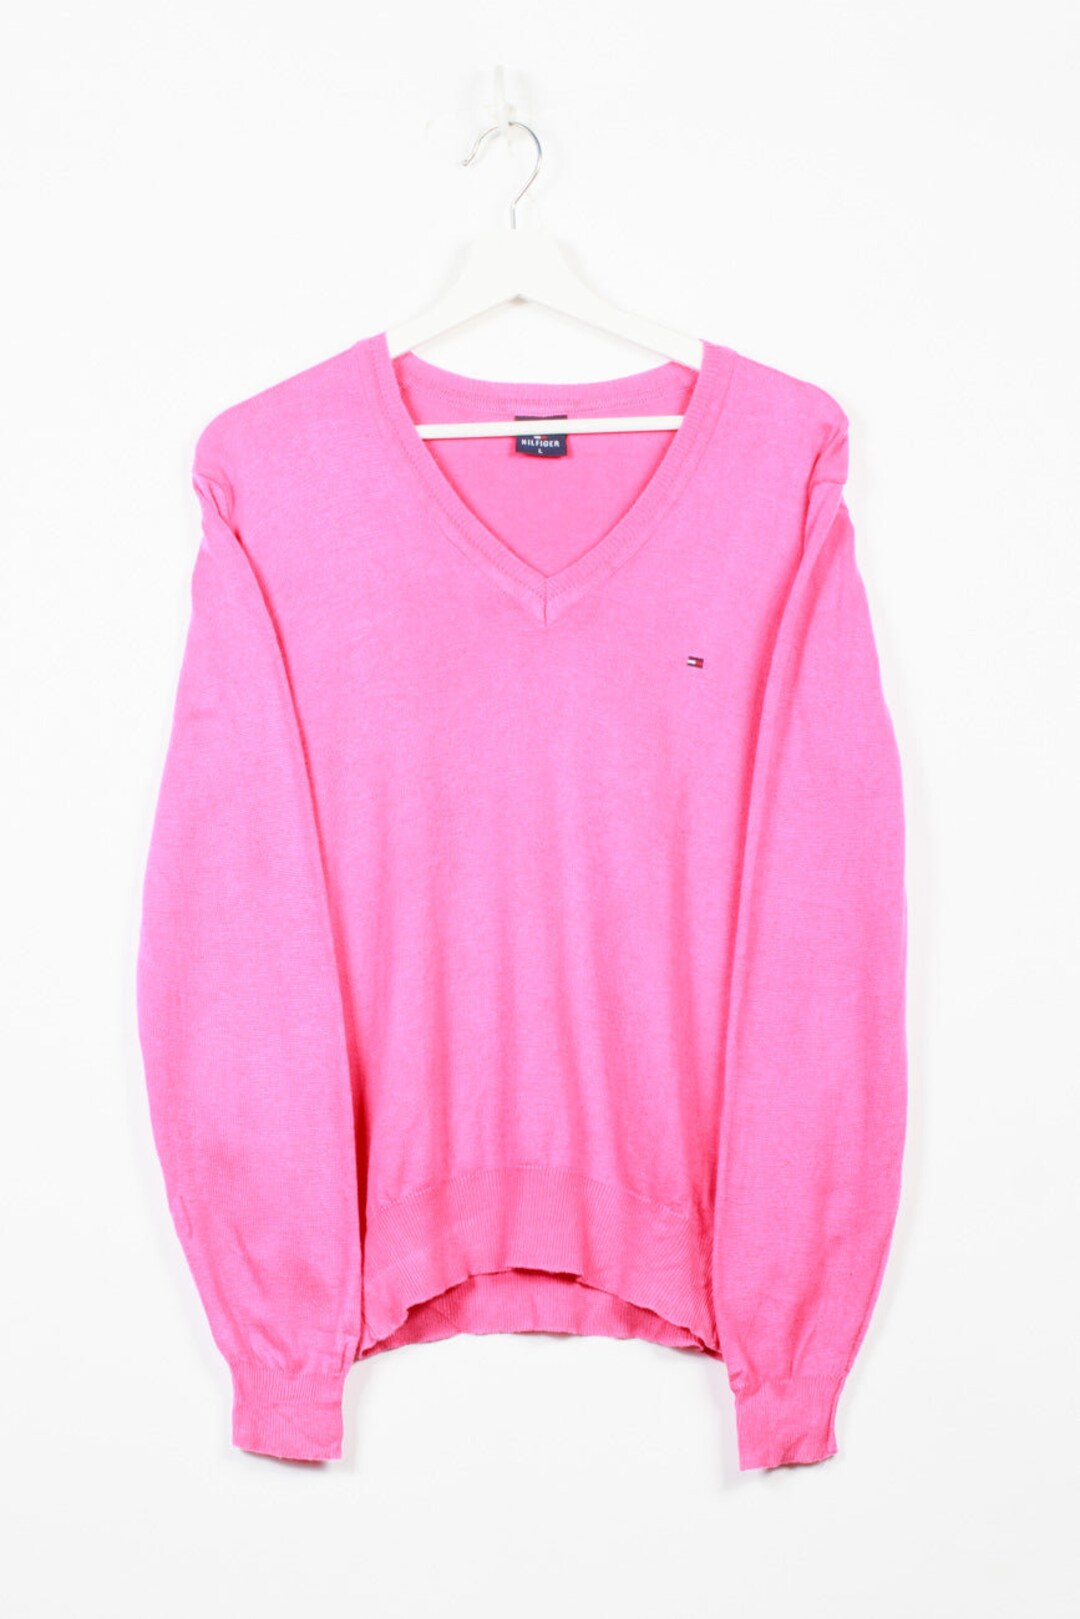 Continental halvleder Relativ størrelse Tommy Hilfiger Knit Sweater in Pink L - Etsy